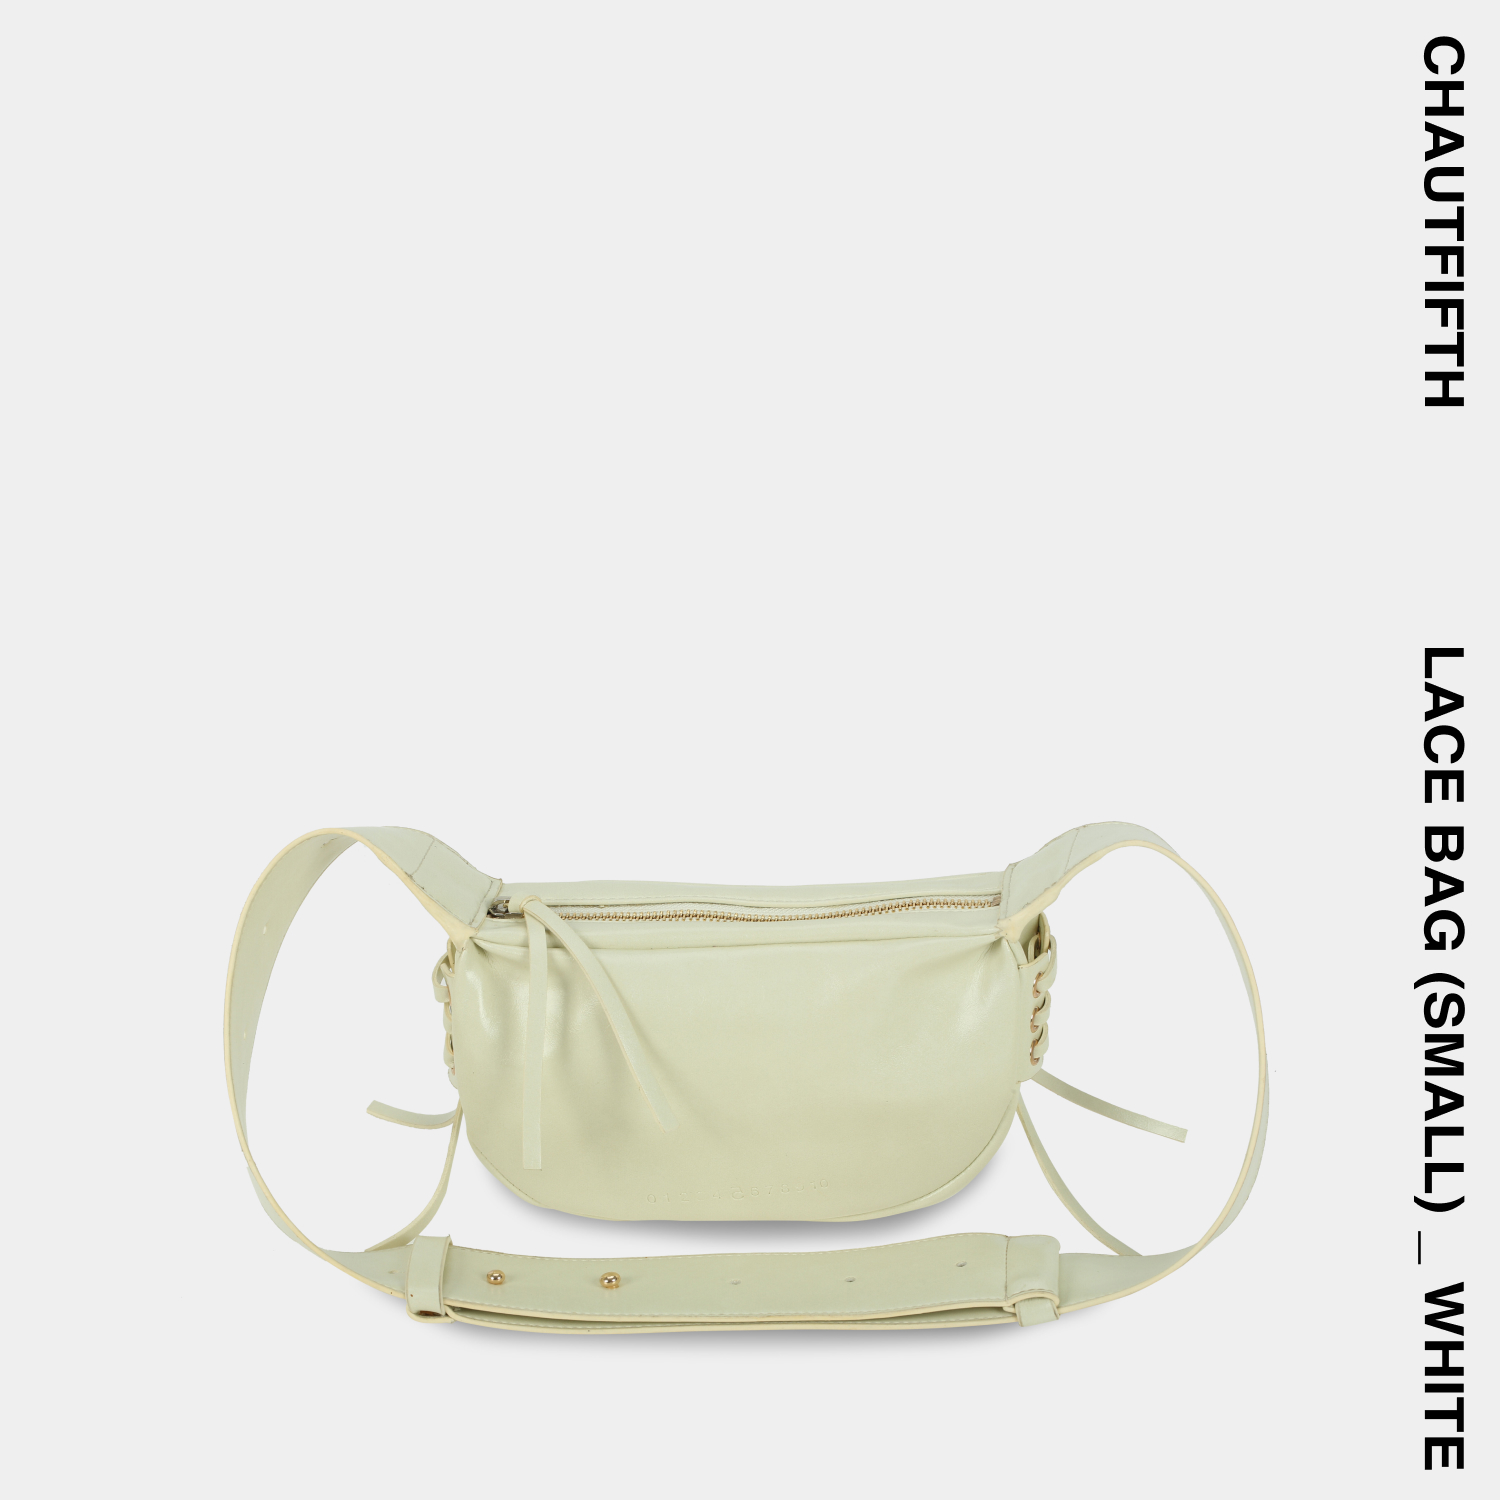 Túi xách LACE BAG size nhỏ (S) màu Trắng - CHAUTFIFTH